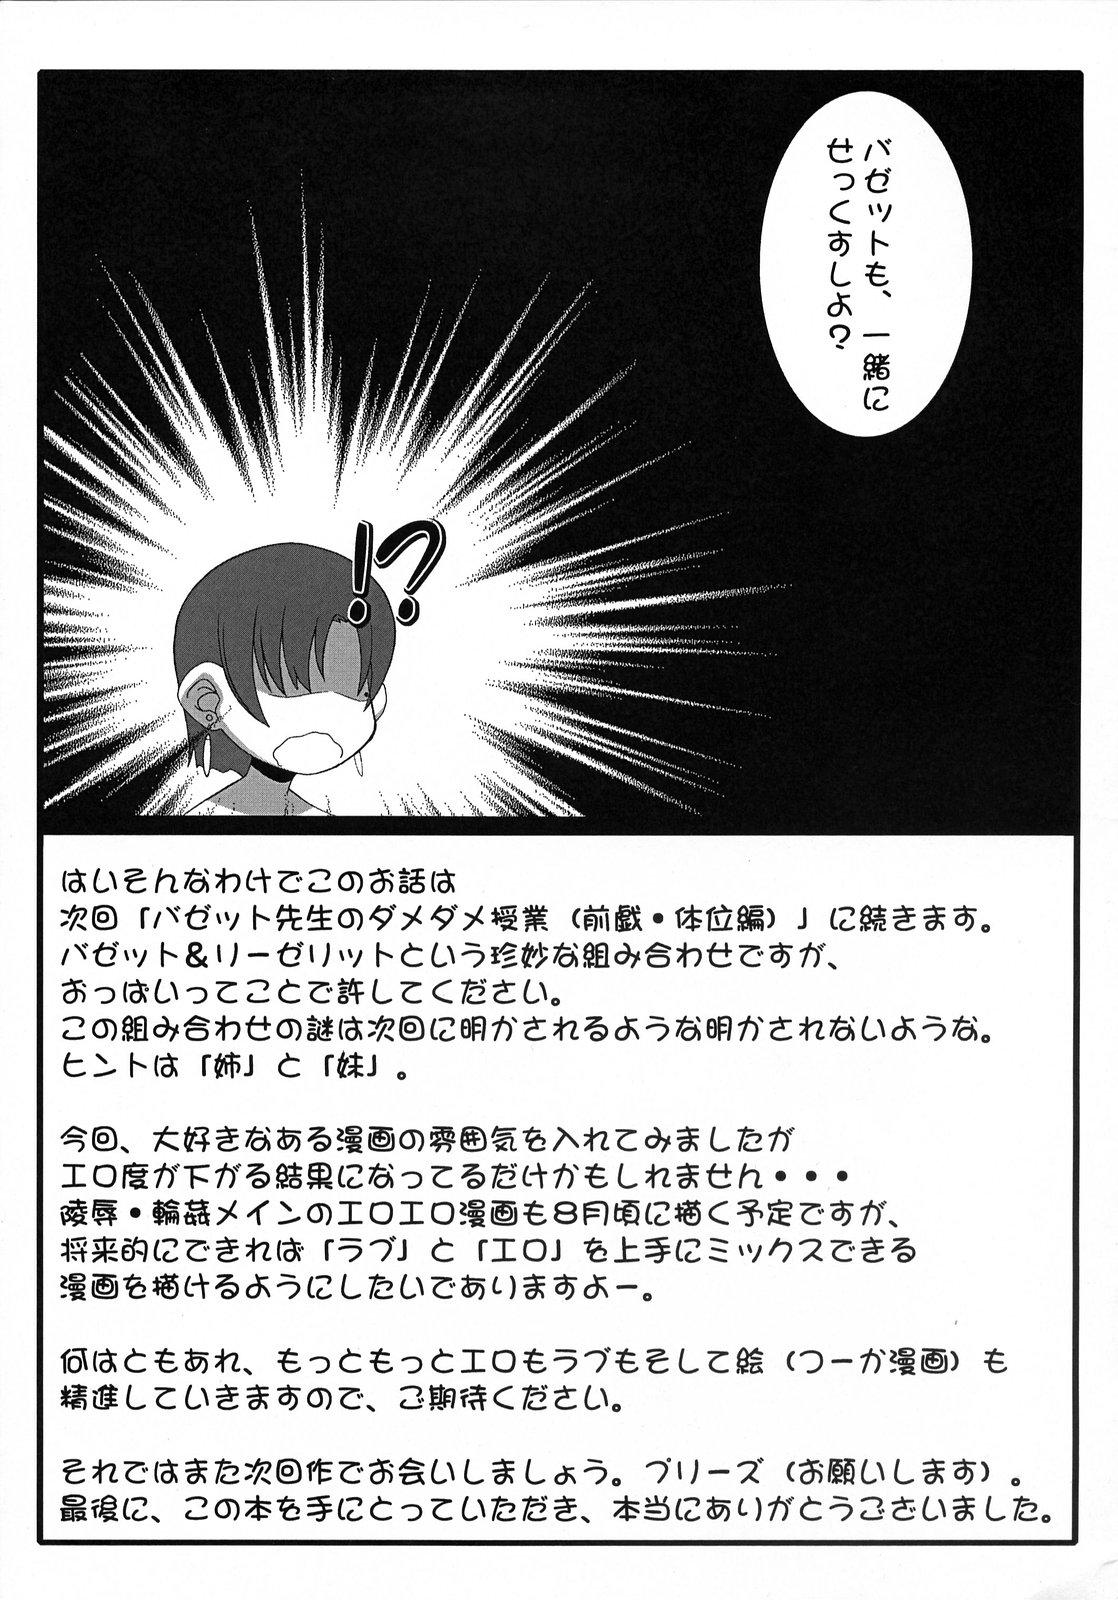 Pica (SC36) [Gachinko Shobou (Koban)] Yappari Leysritt (kyonyuu no hou)] wa eroi na. (Fate/hollow ataraxia) - Fate stay night Fate hollow ataraxia Stepmother - Page 19